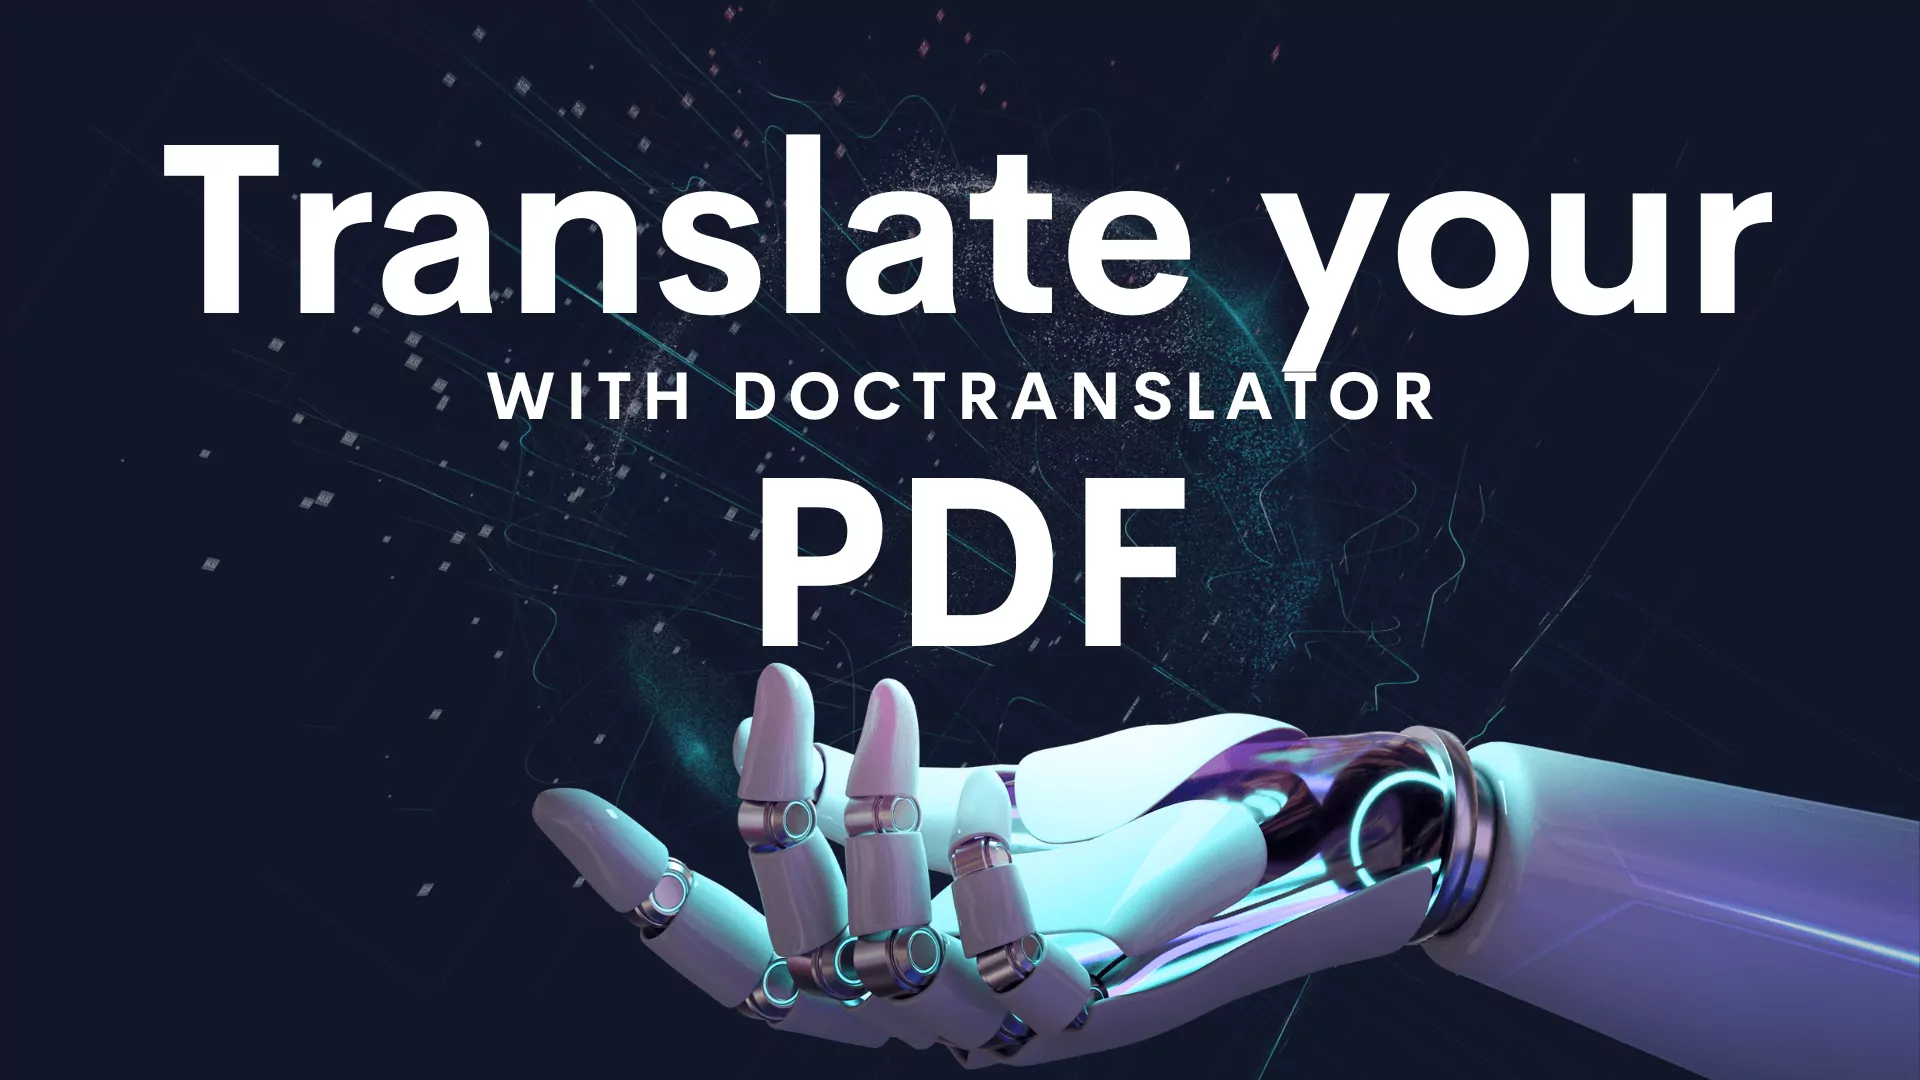 μεταφράστε το PDF σας με το doctranclator